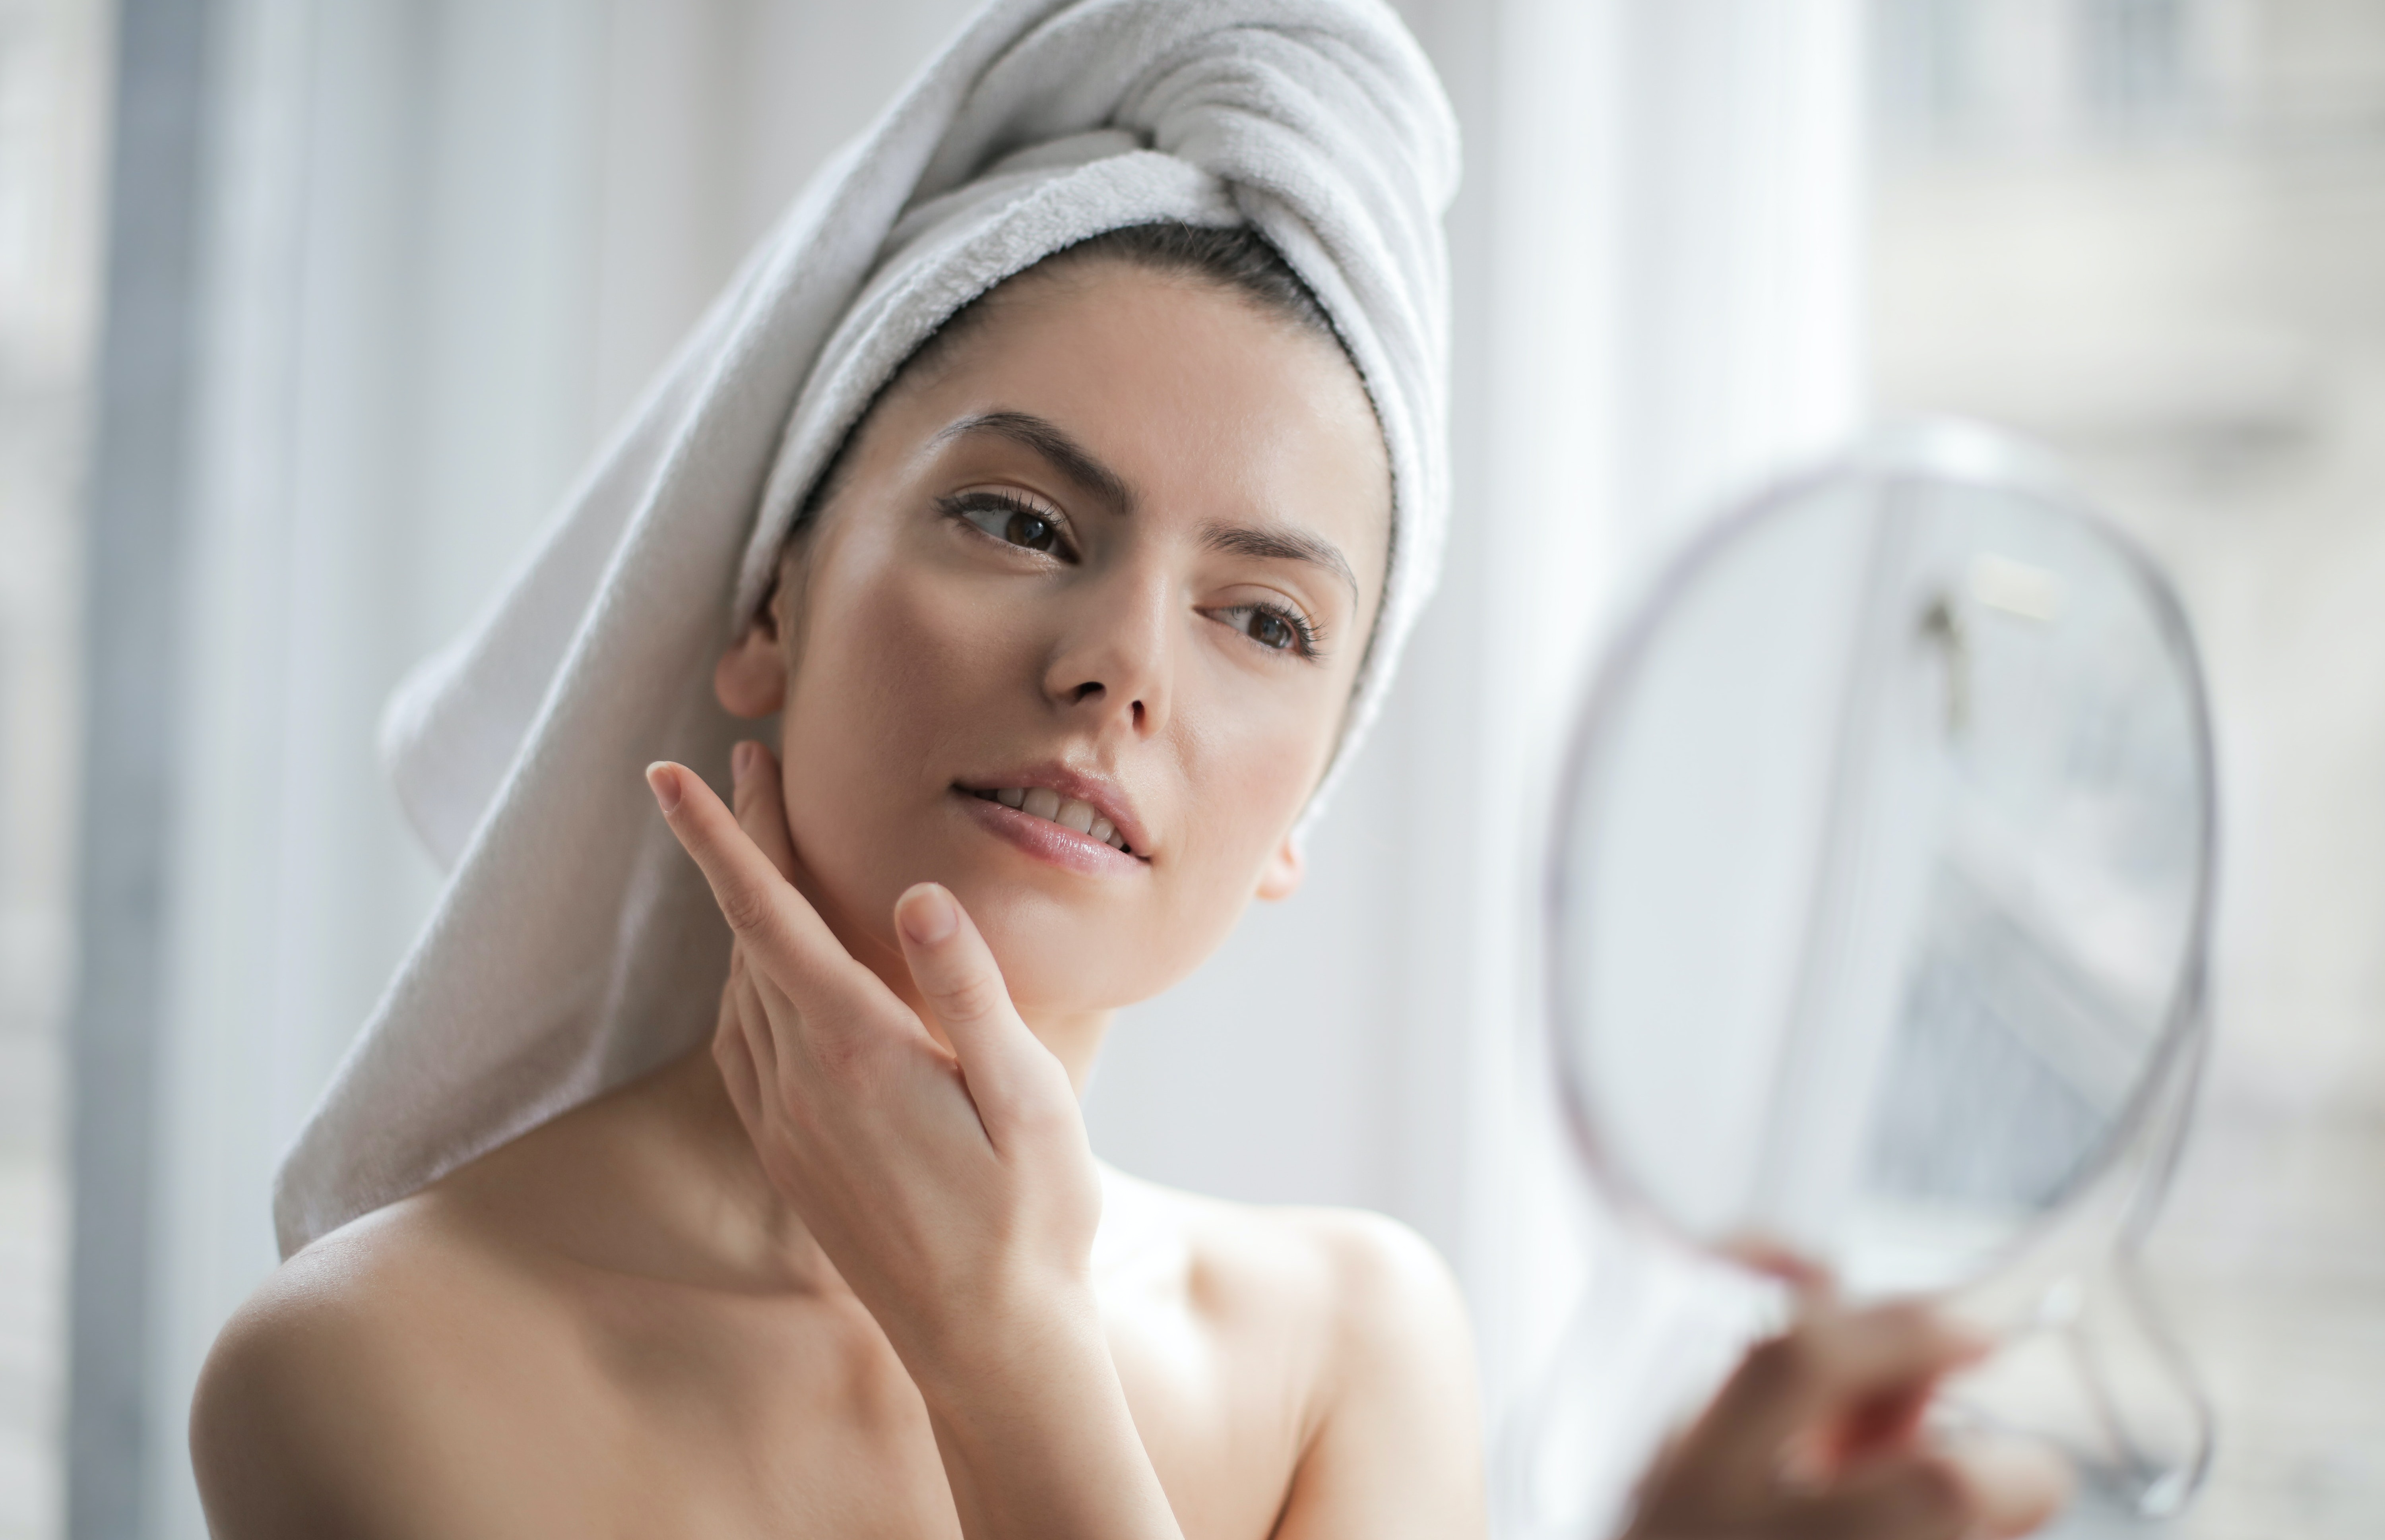 ТОП-10 кремов для лица – советы дерматолога-косметолога